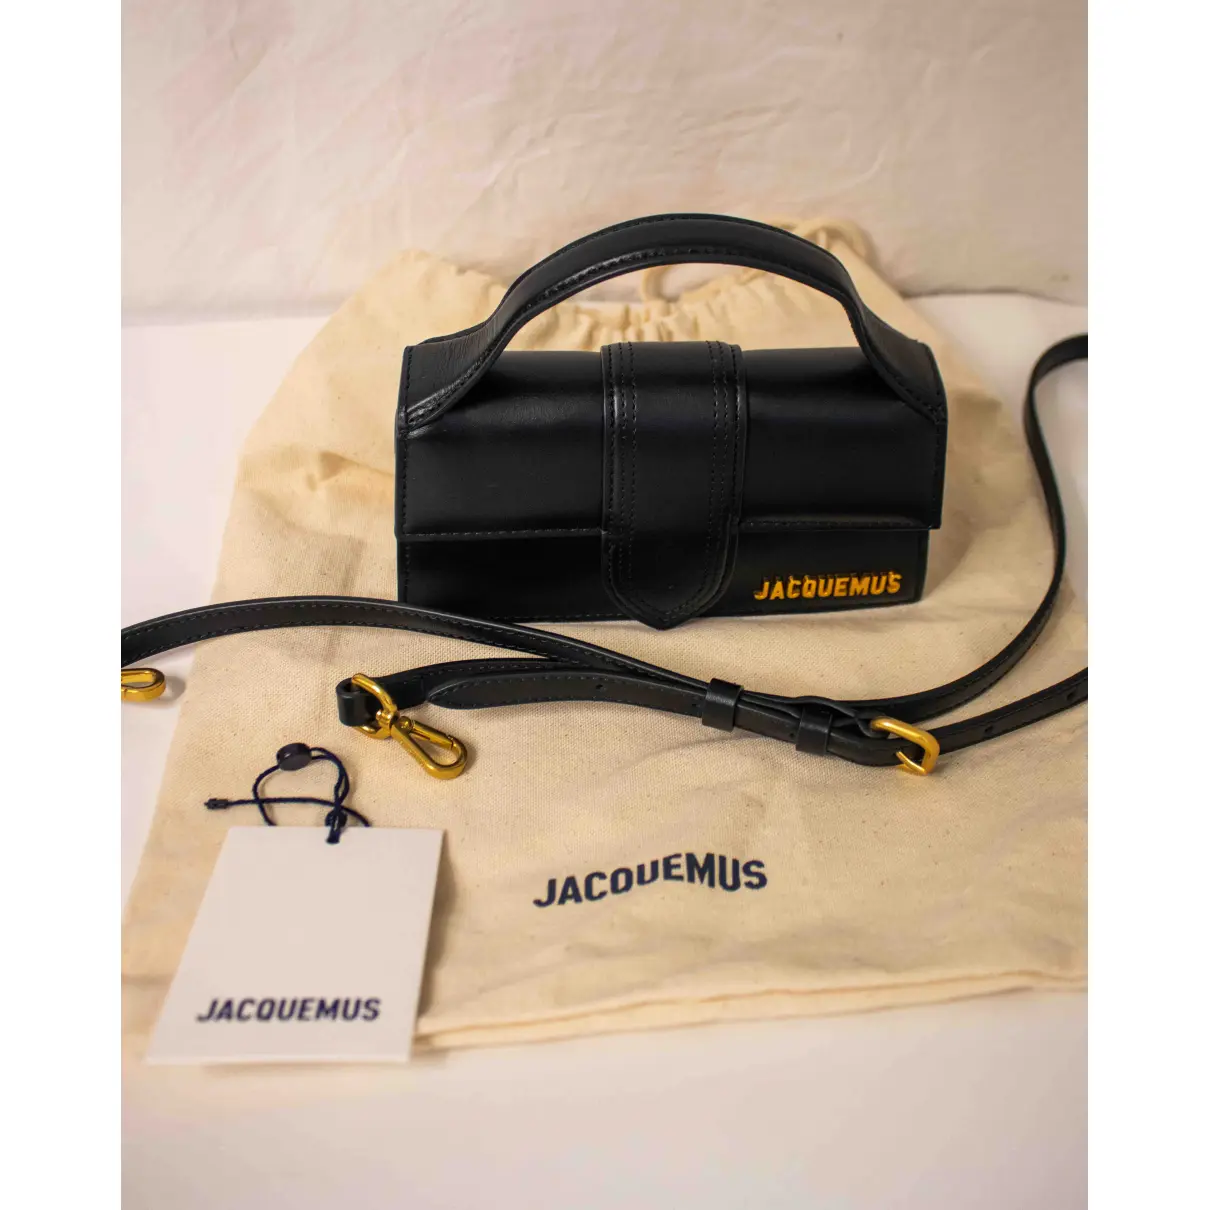 Leather mini bag Jacquemus